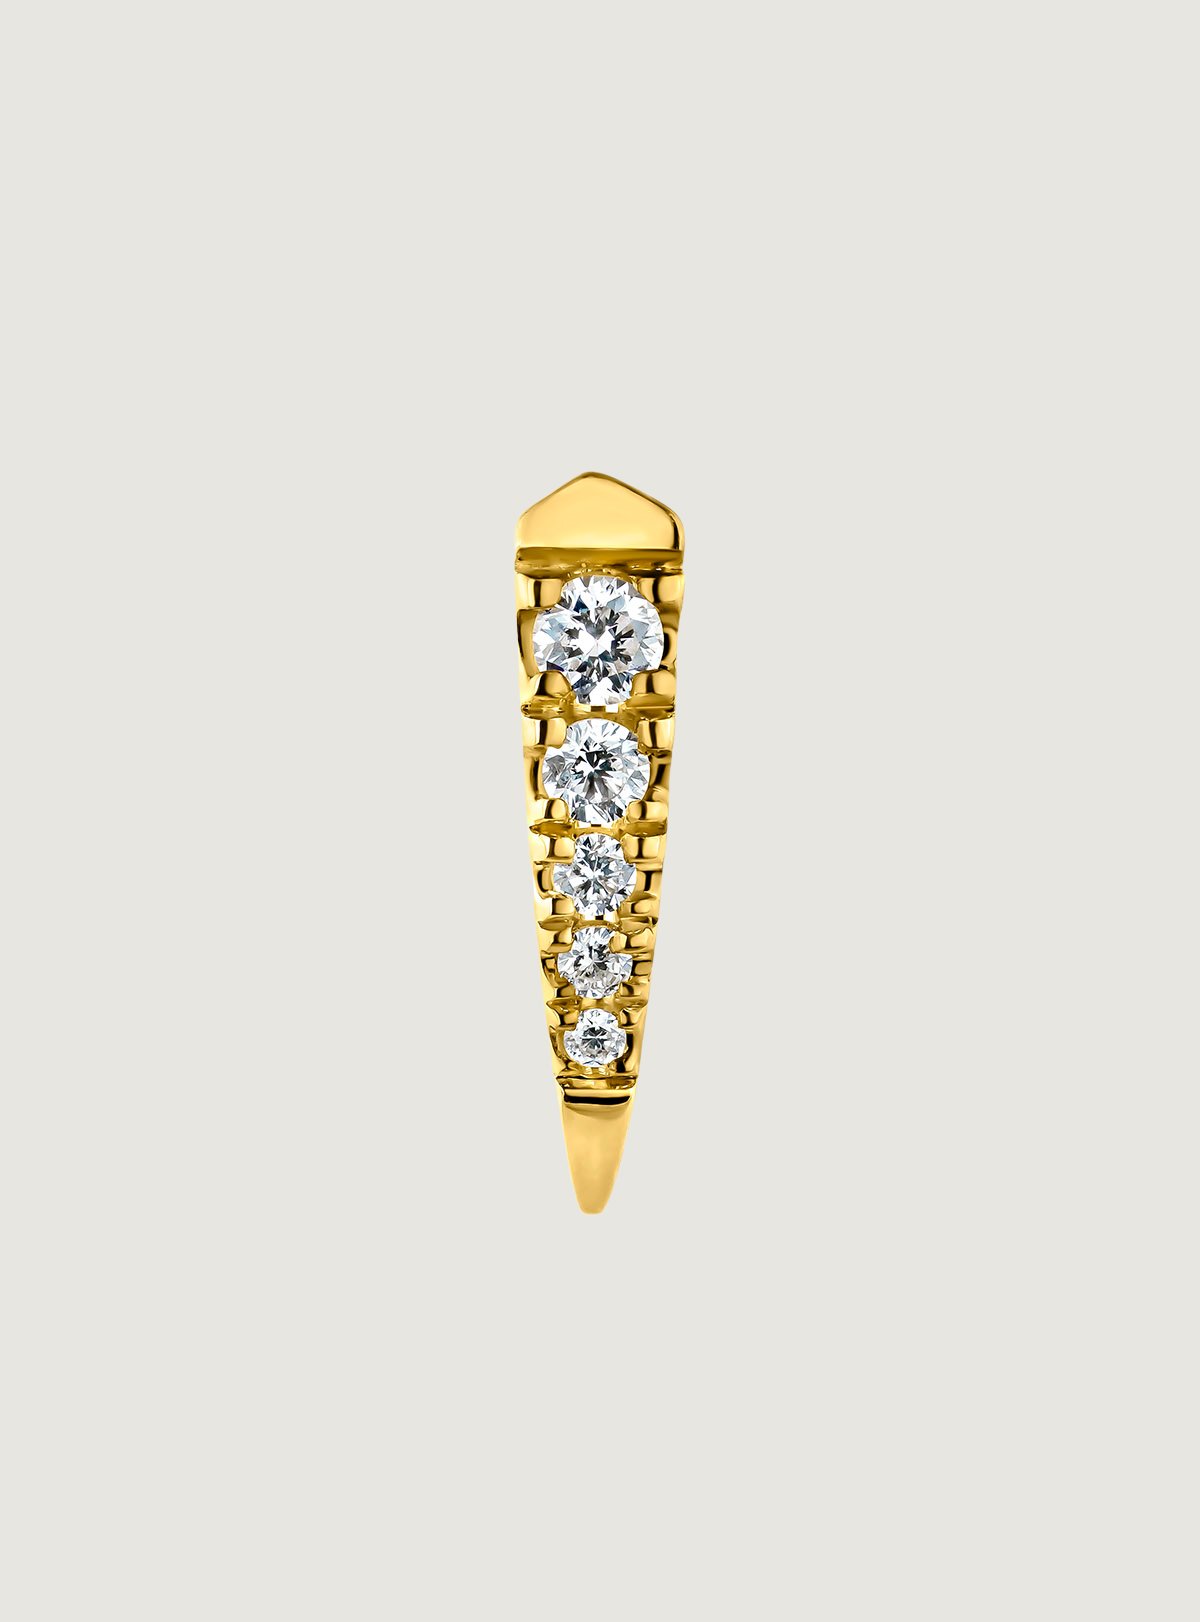 Boucle d'oreille individuelle en or jaune 18 carats avec des diamants.